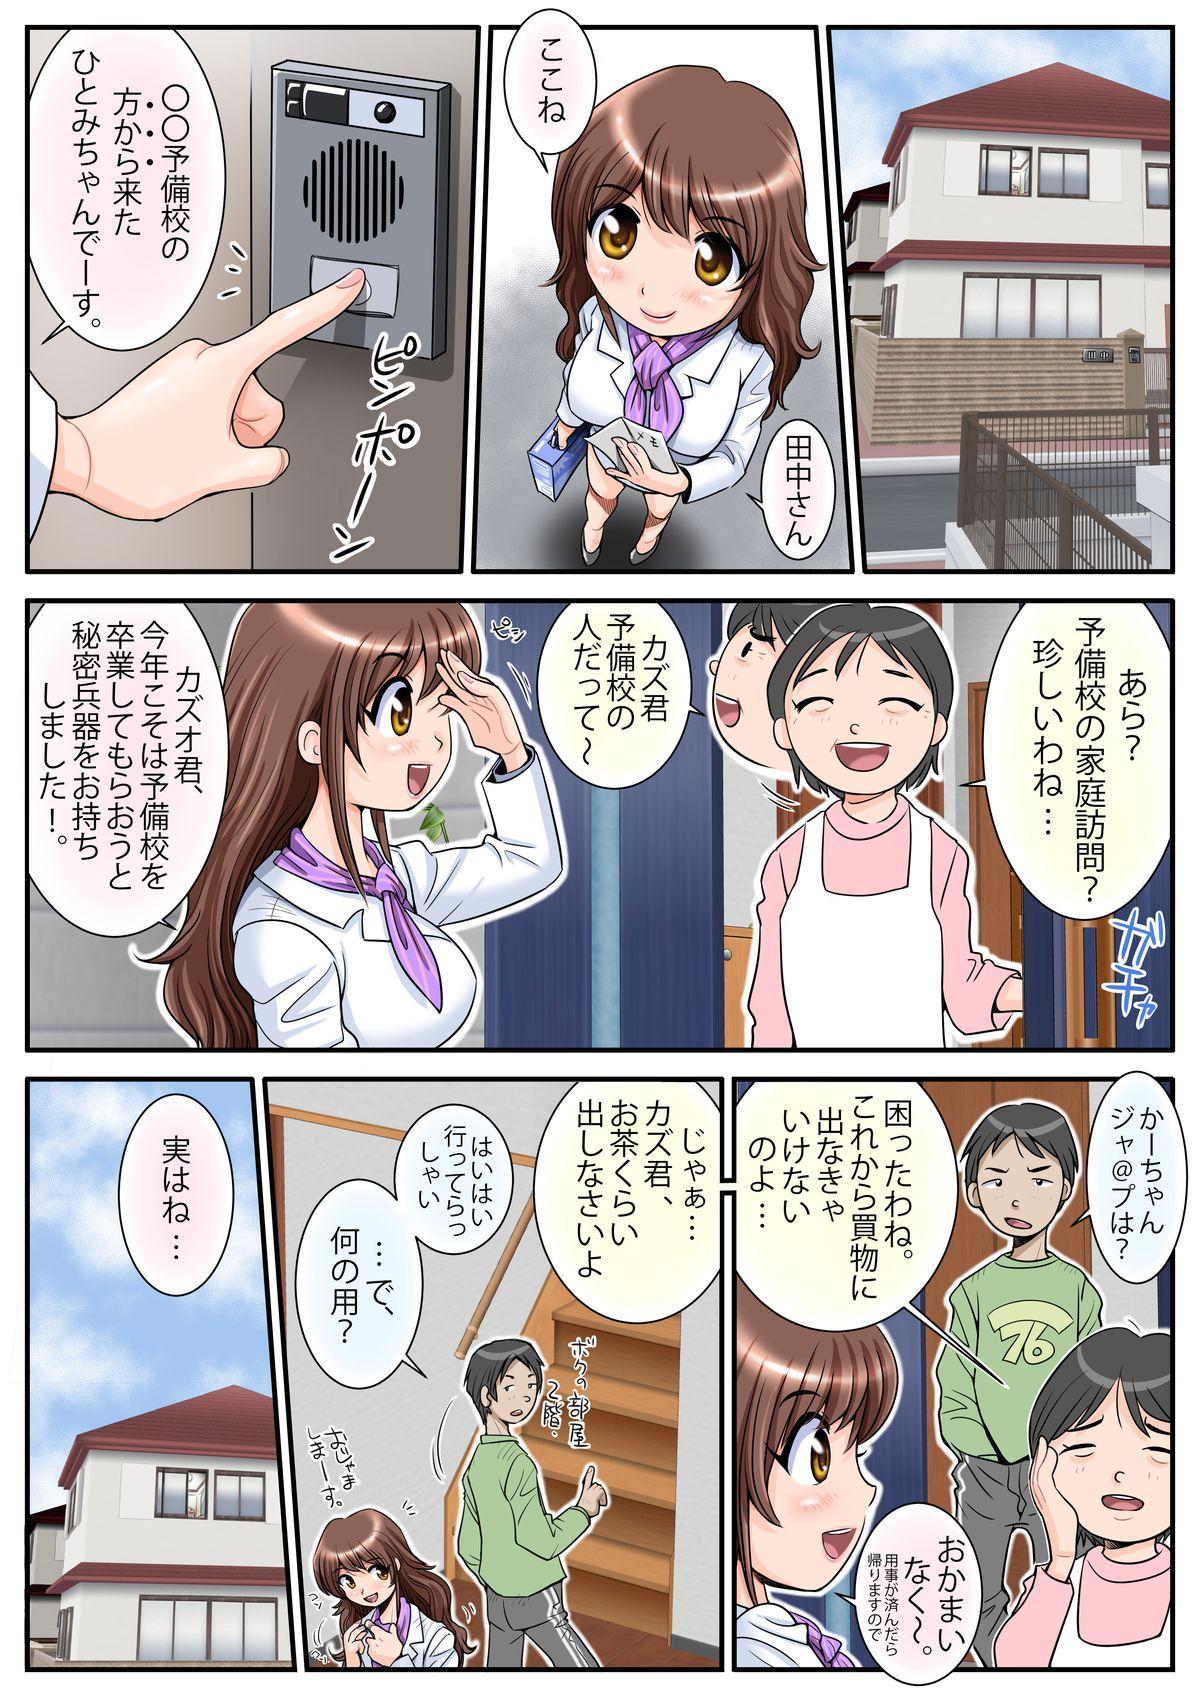 Jacking Hatarake! Hitomi-chan Vol. 1 Futa - Page 5